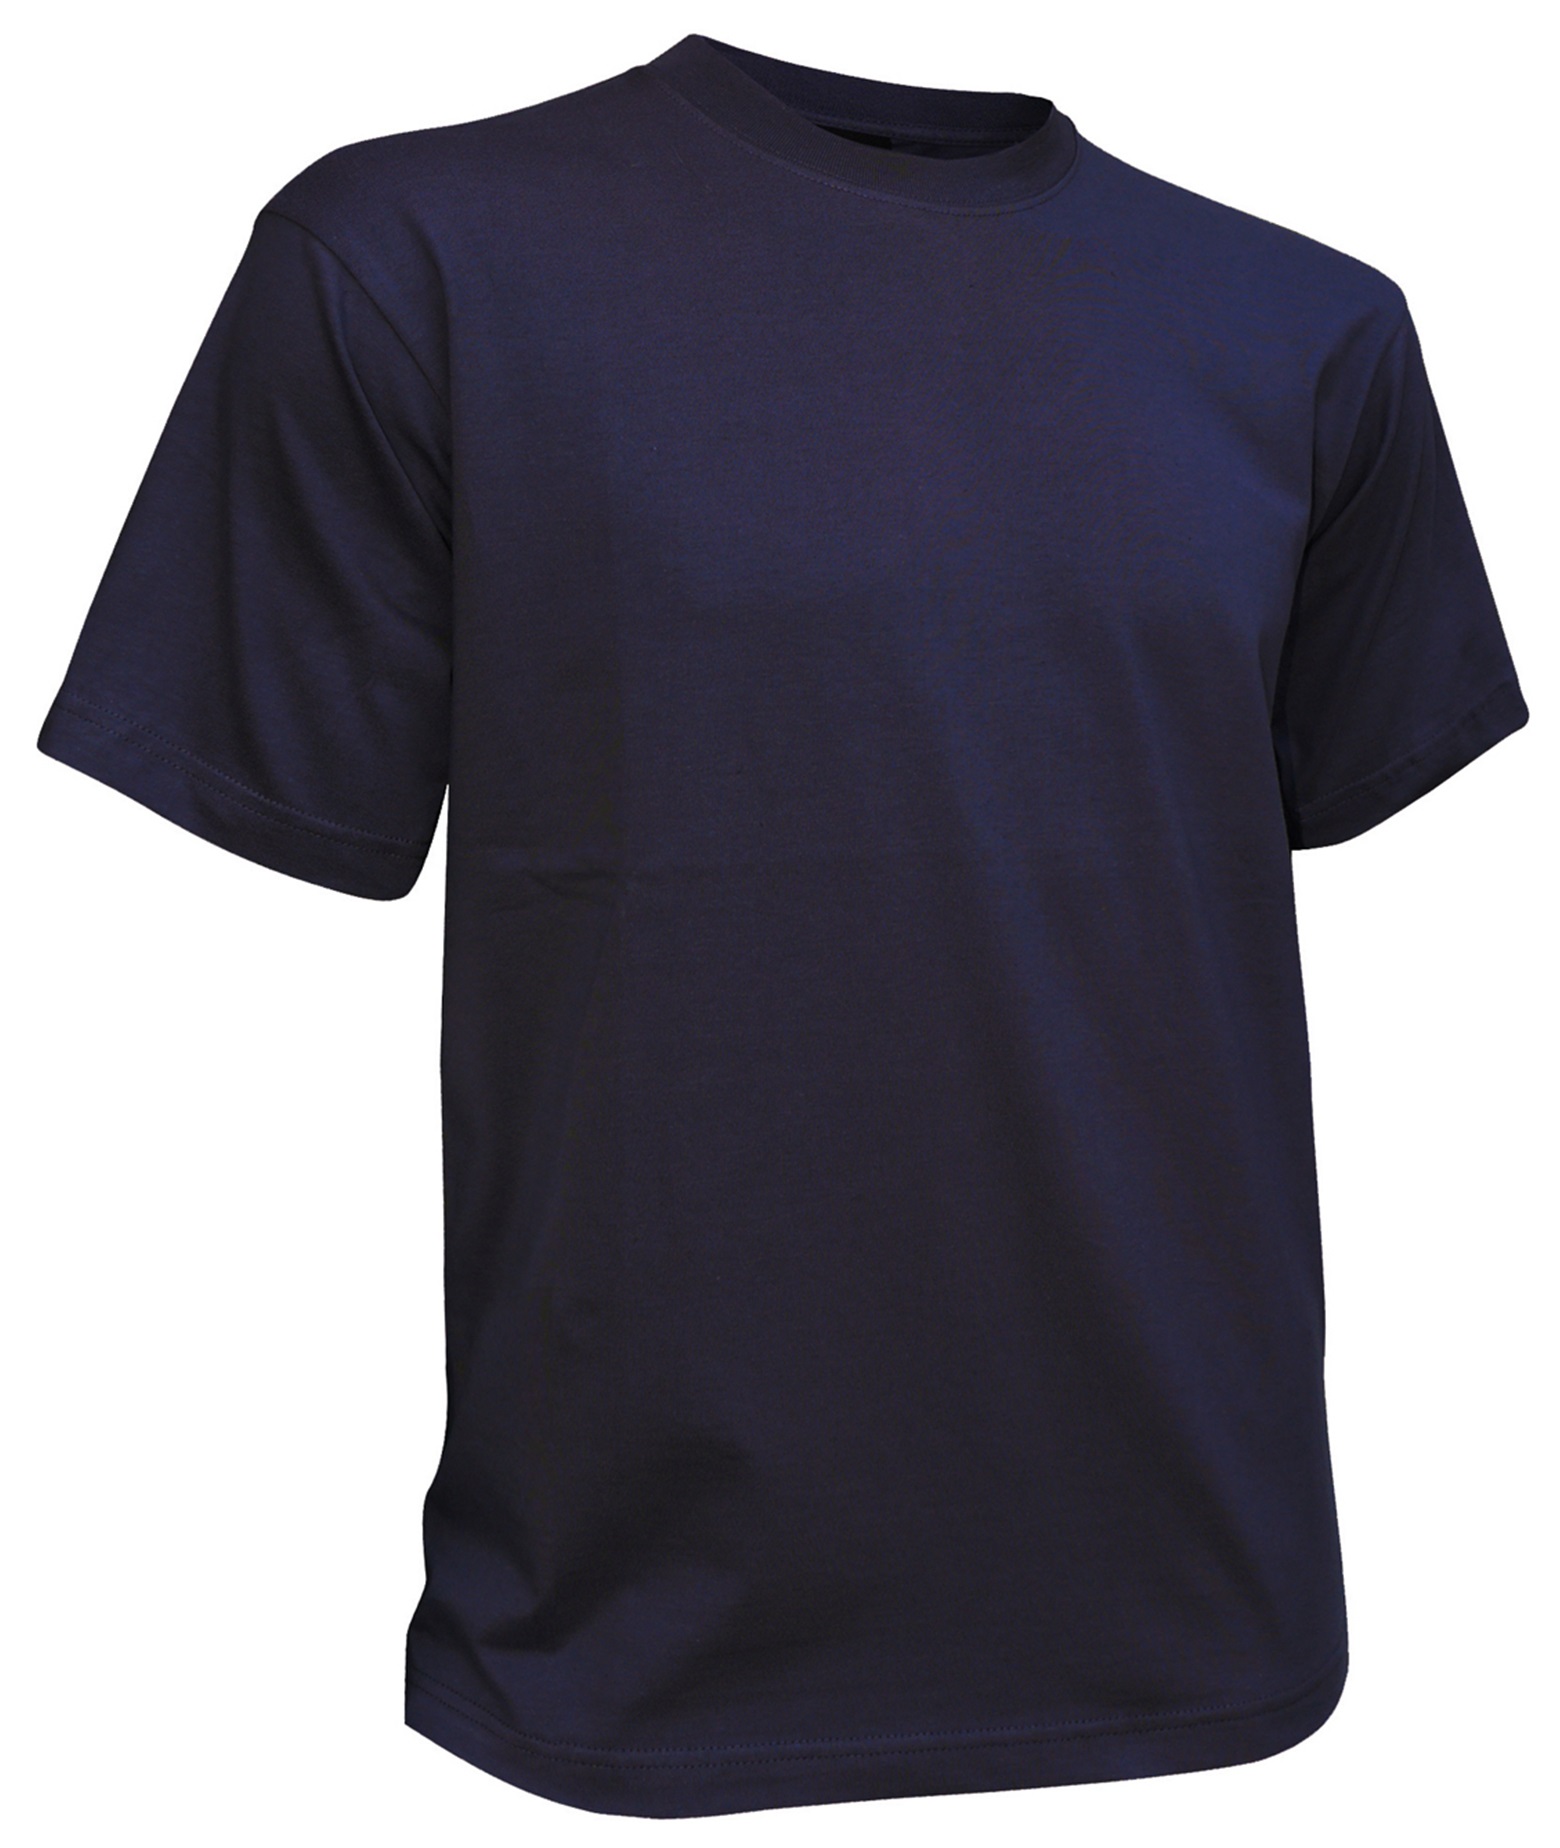 DASSY Oscar Arbeits-T-Shirt für das Teamoutfit